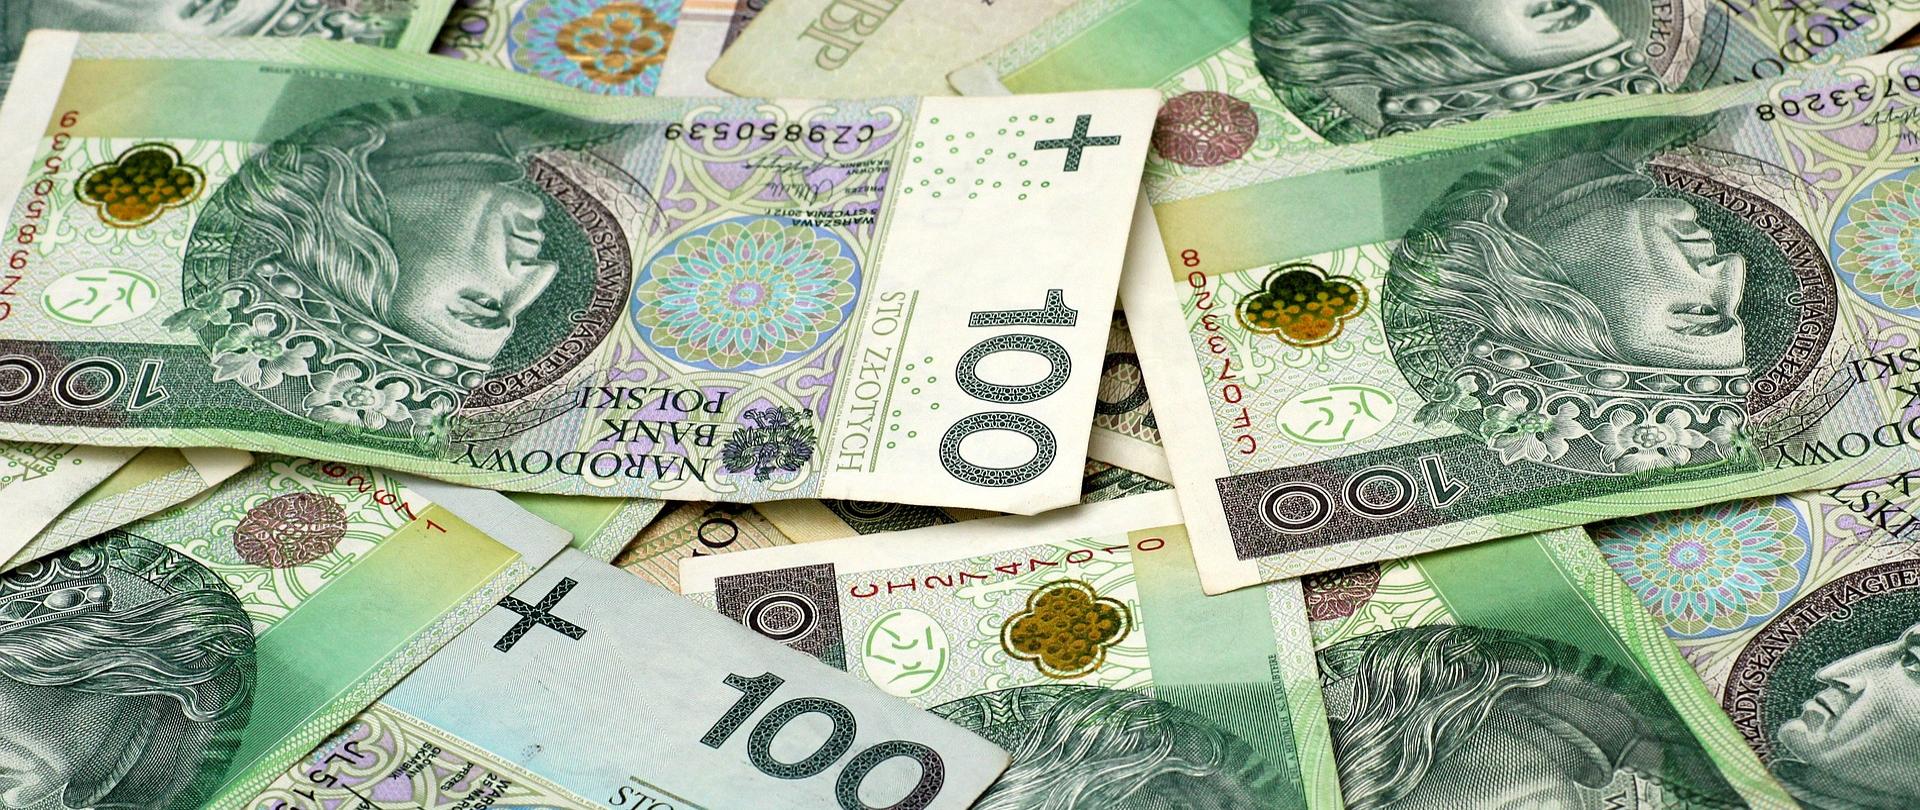 Zdjęcie przedstawia banknoty o nominale 100 złotych